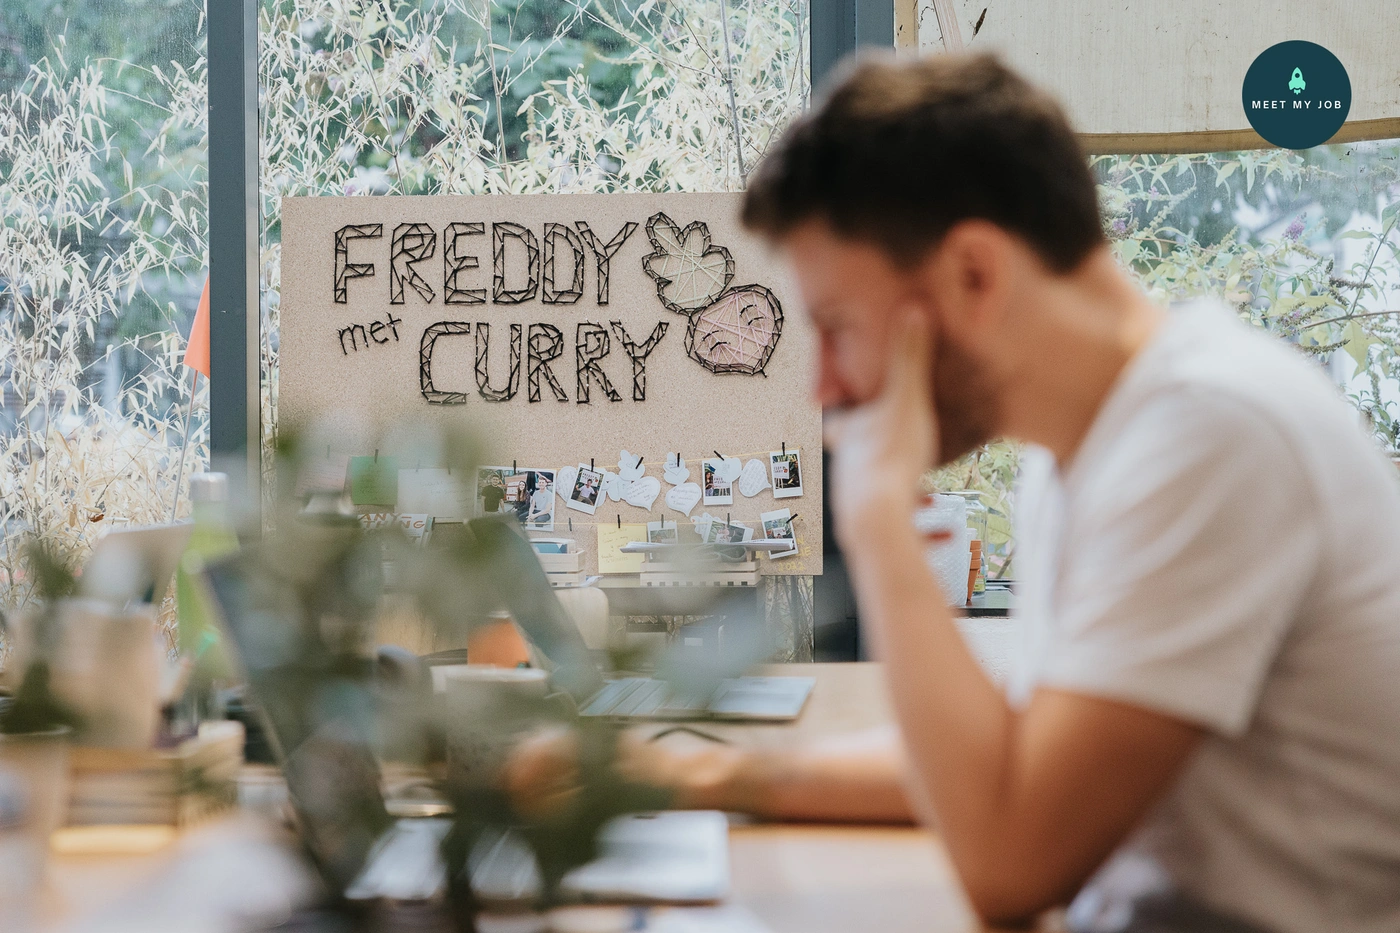 Freddy Met Curry - image n°7 - Meet My Job